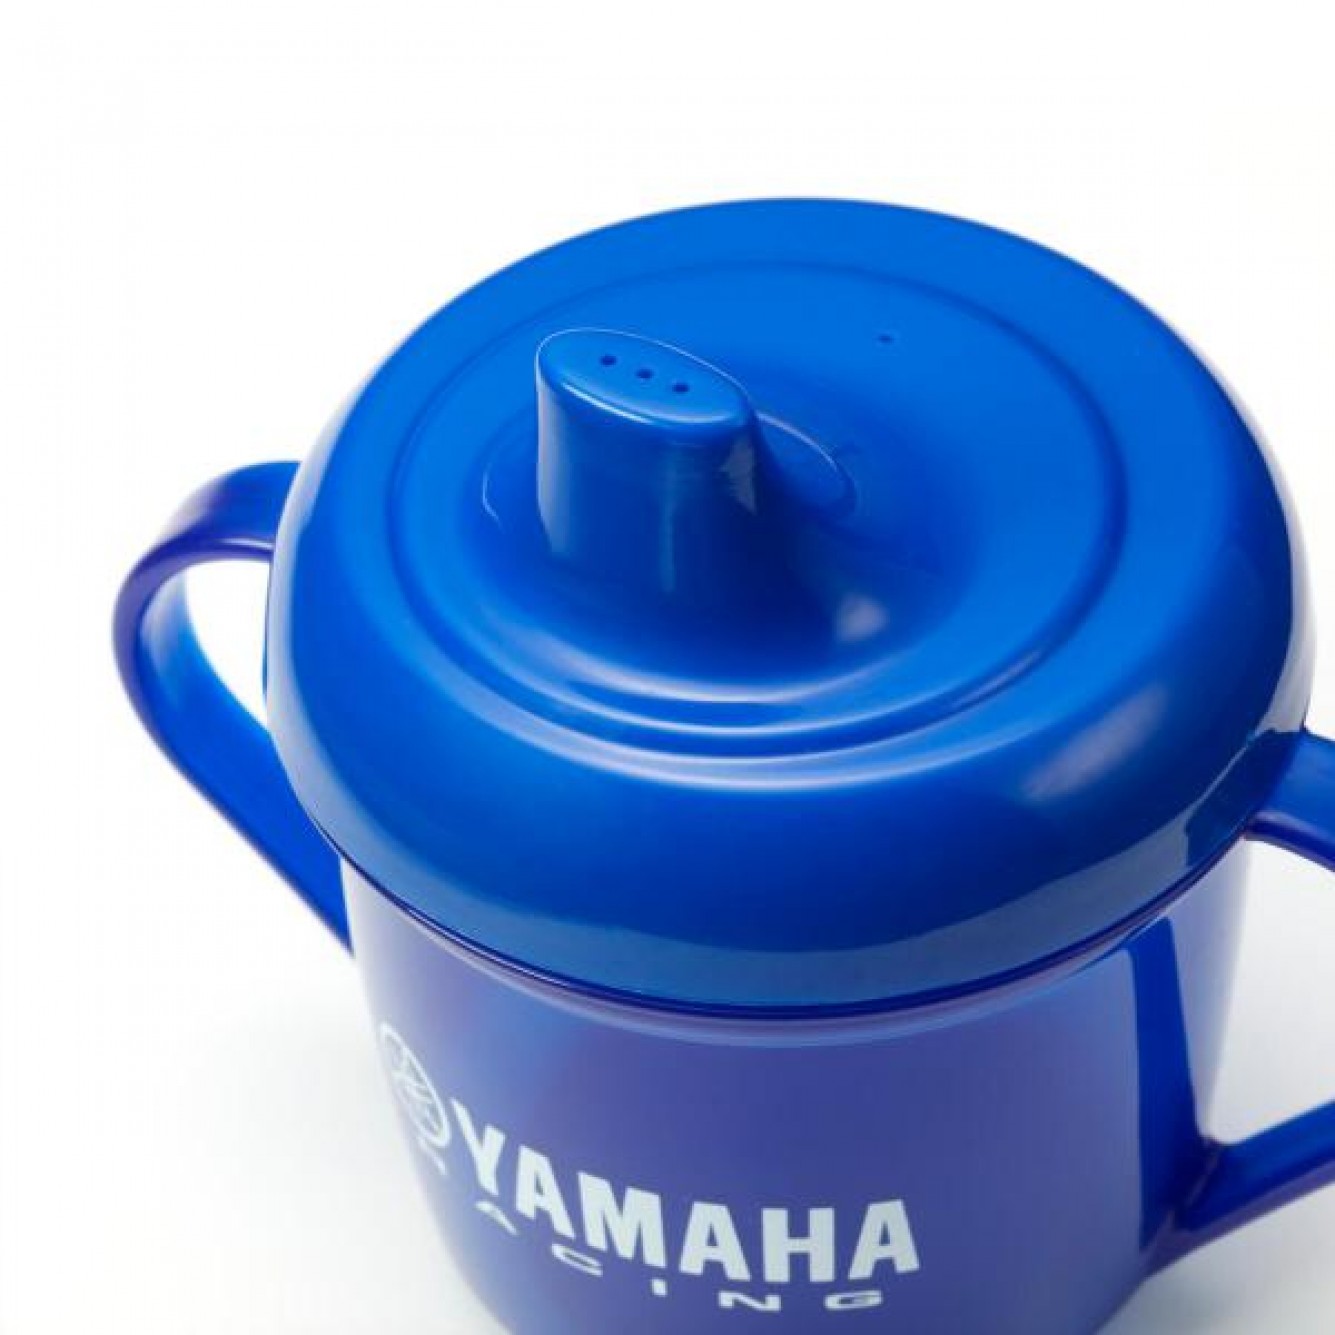 Yamaha | Baby Cadeauset klein